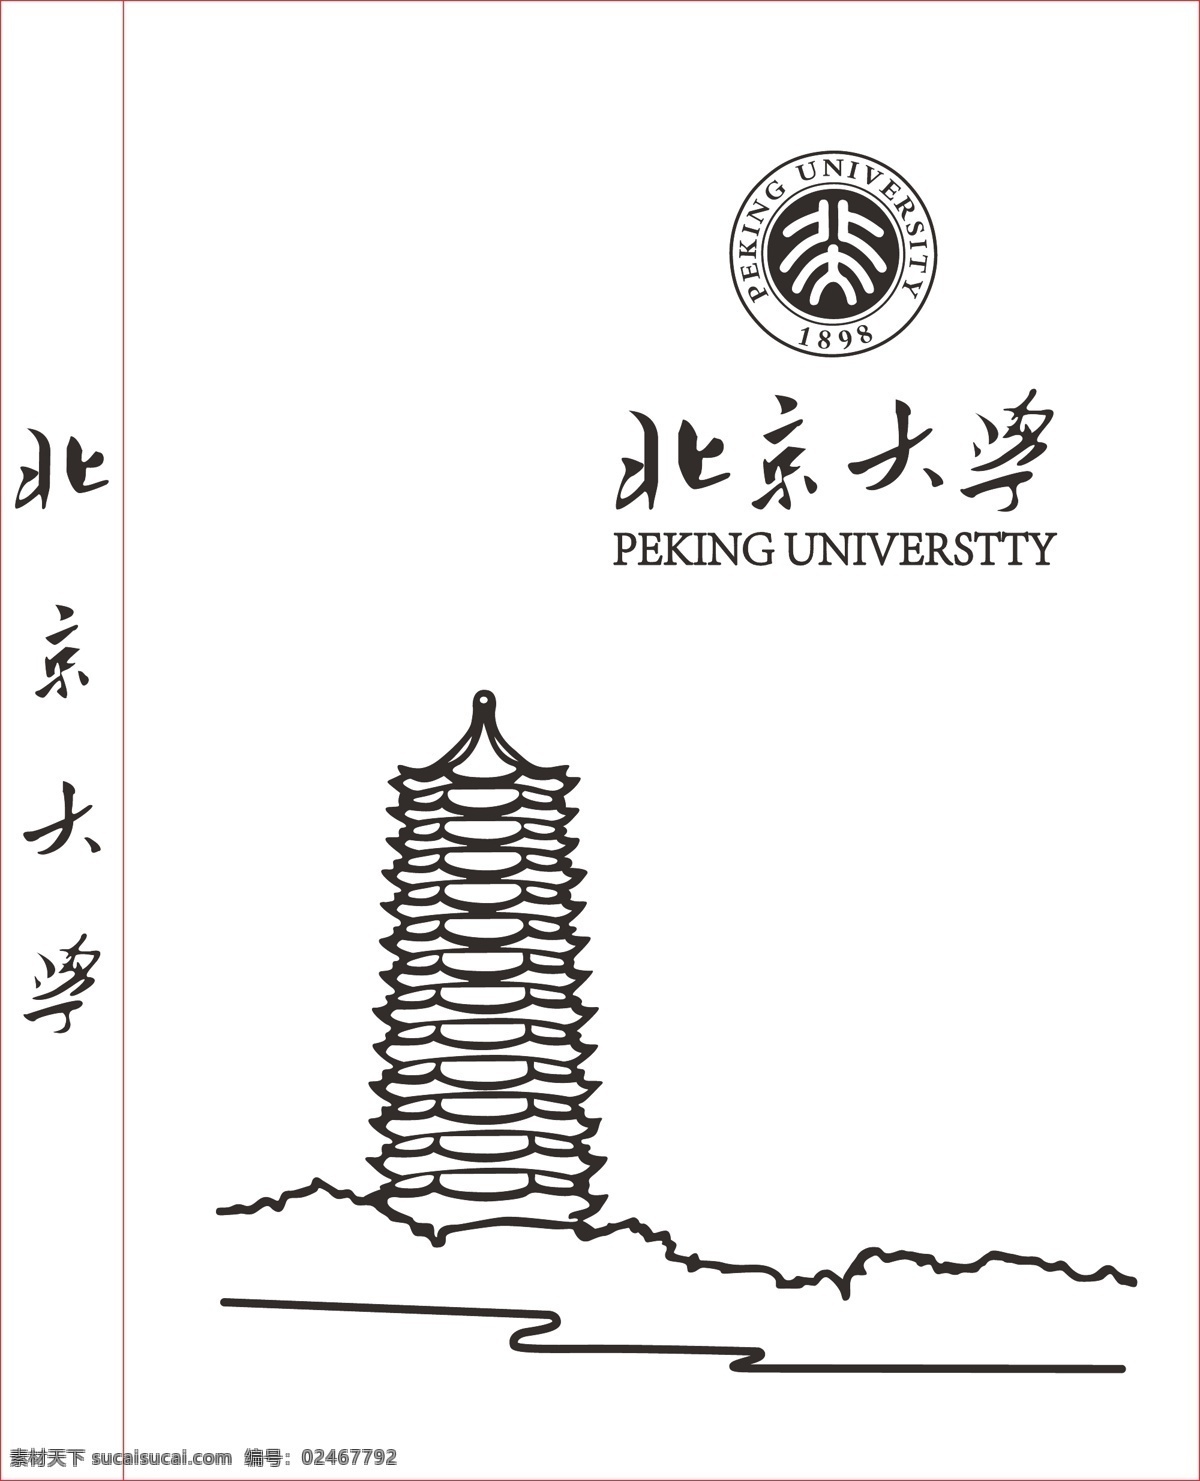 北京大学 未名湖 博雅塔 矢量 笔记本 自然景观 建筑园林